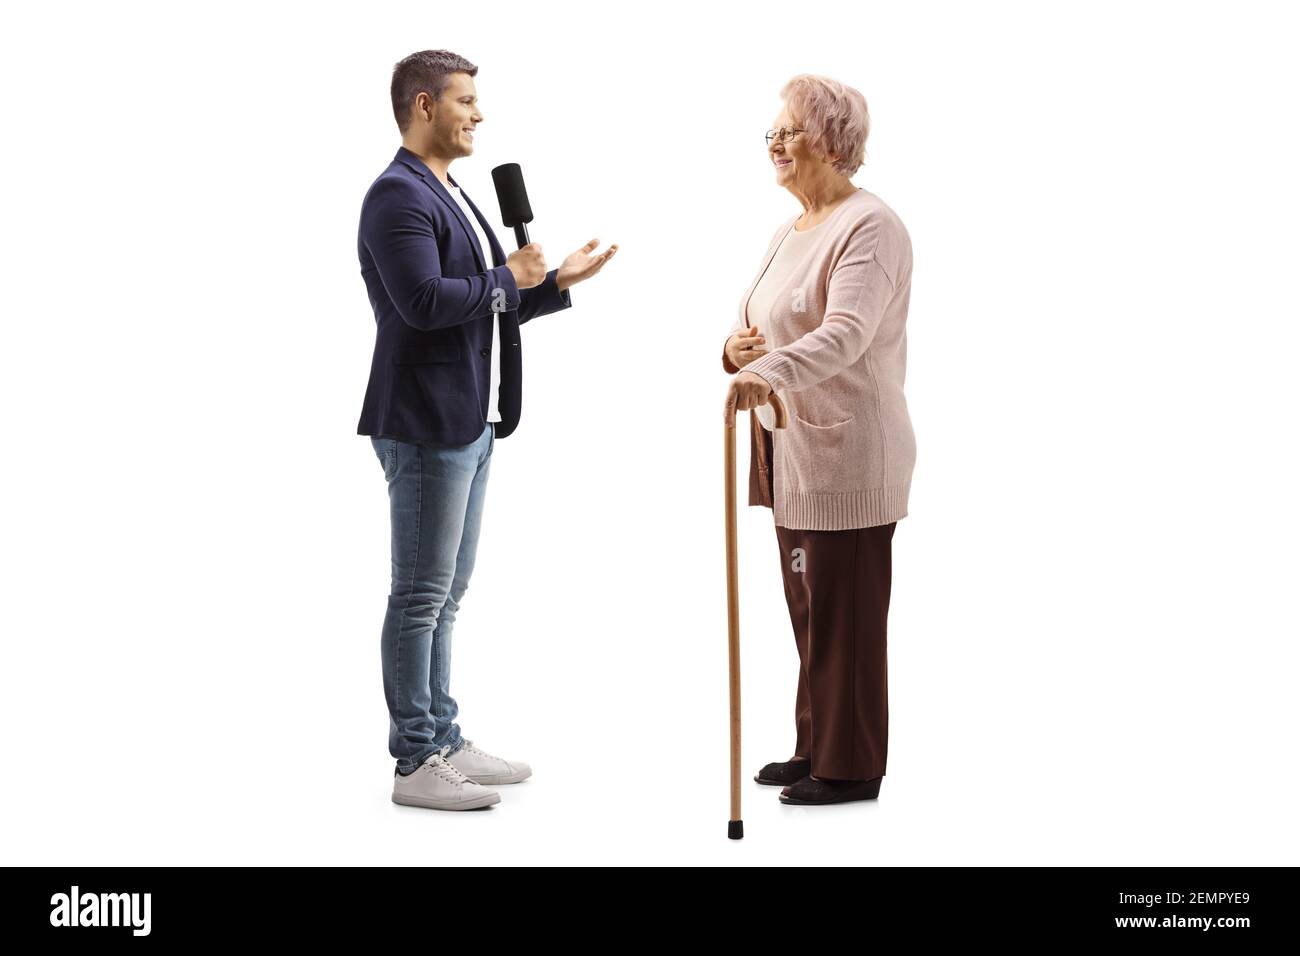 Junger männlicher Reporter interviewte einen älteren Bürger isoliert auf weiß Hintergrund Stockfoto